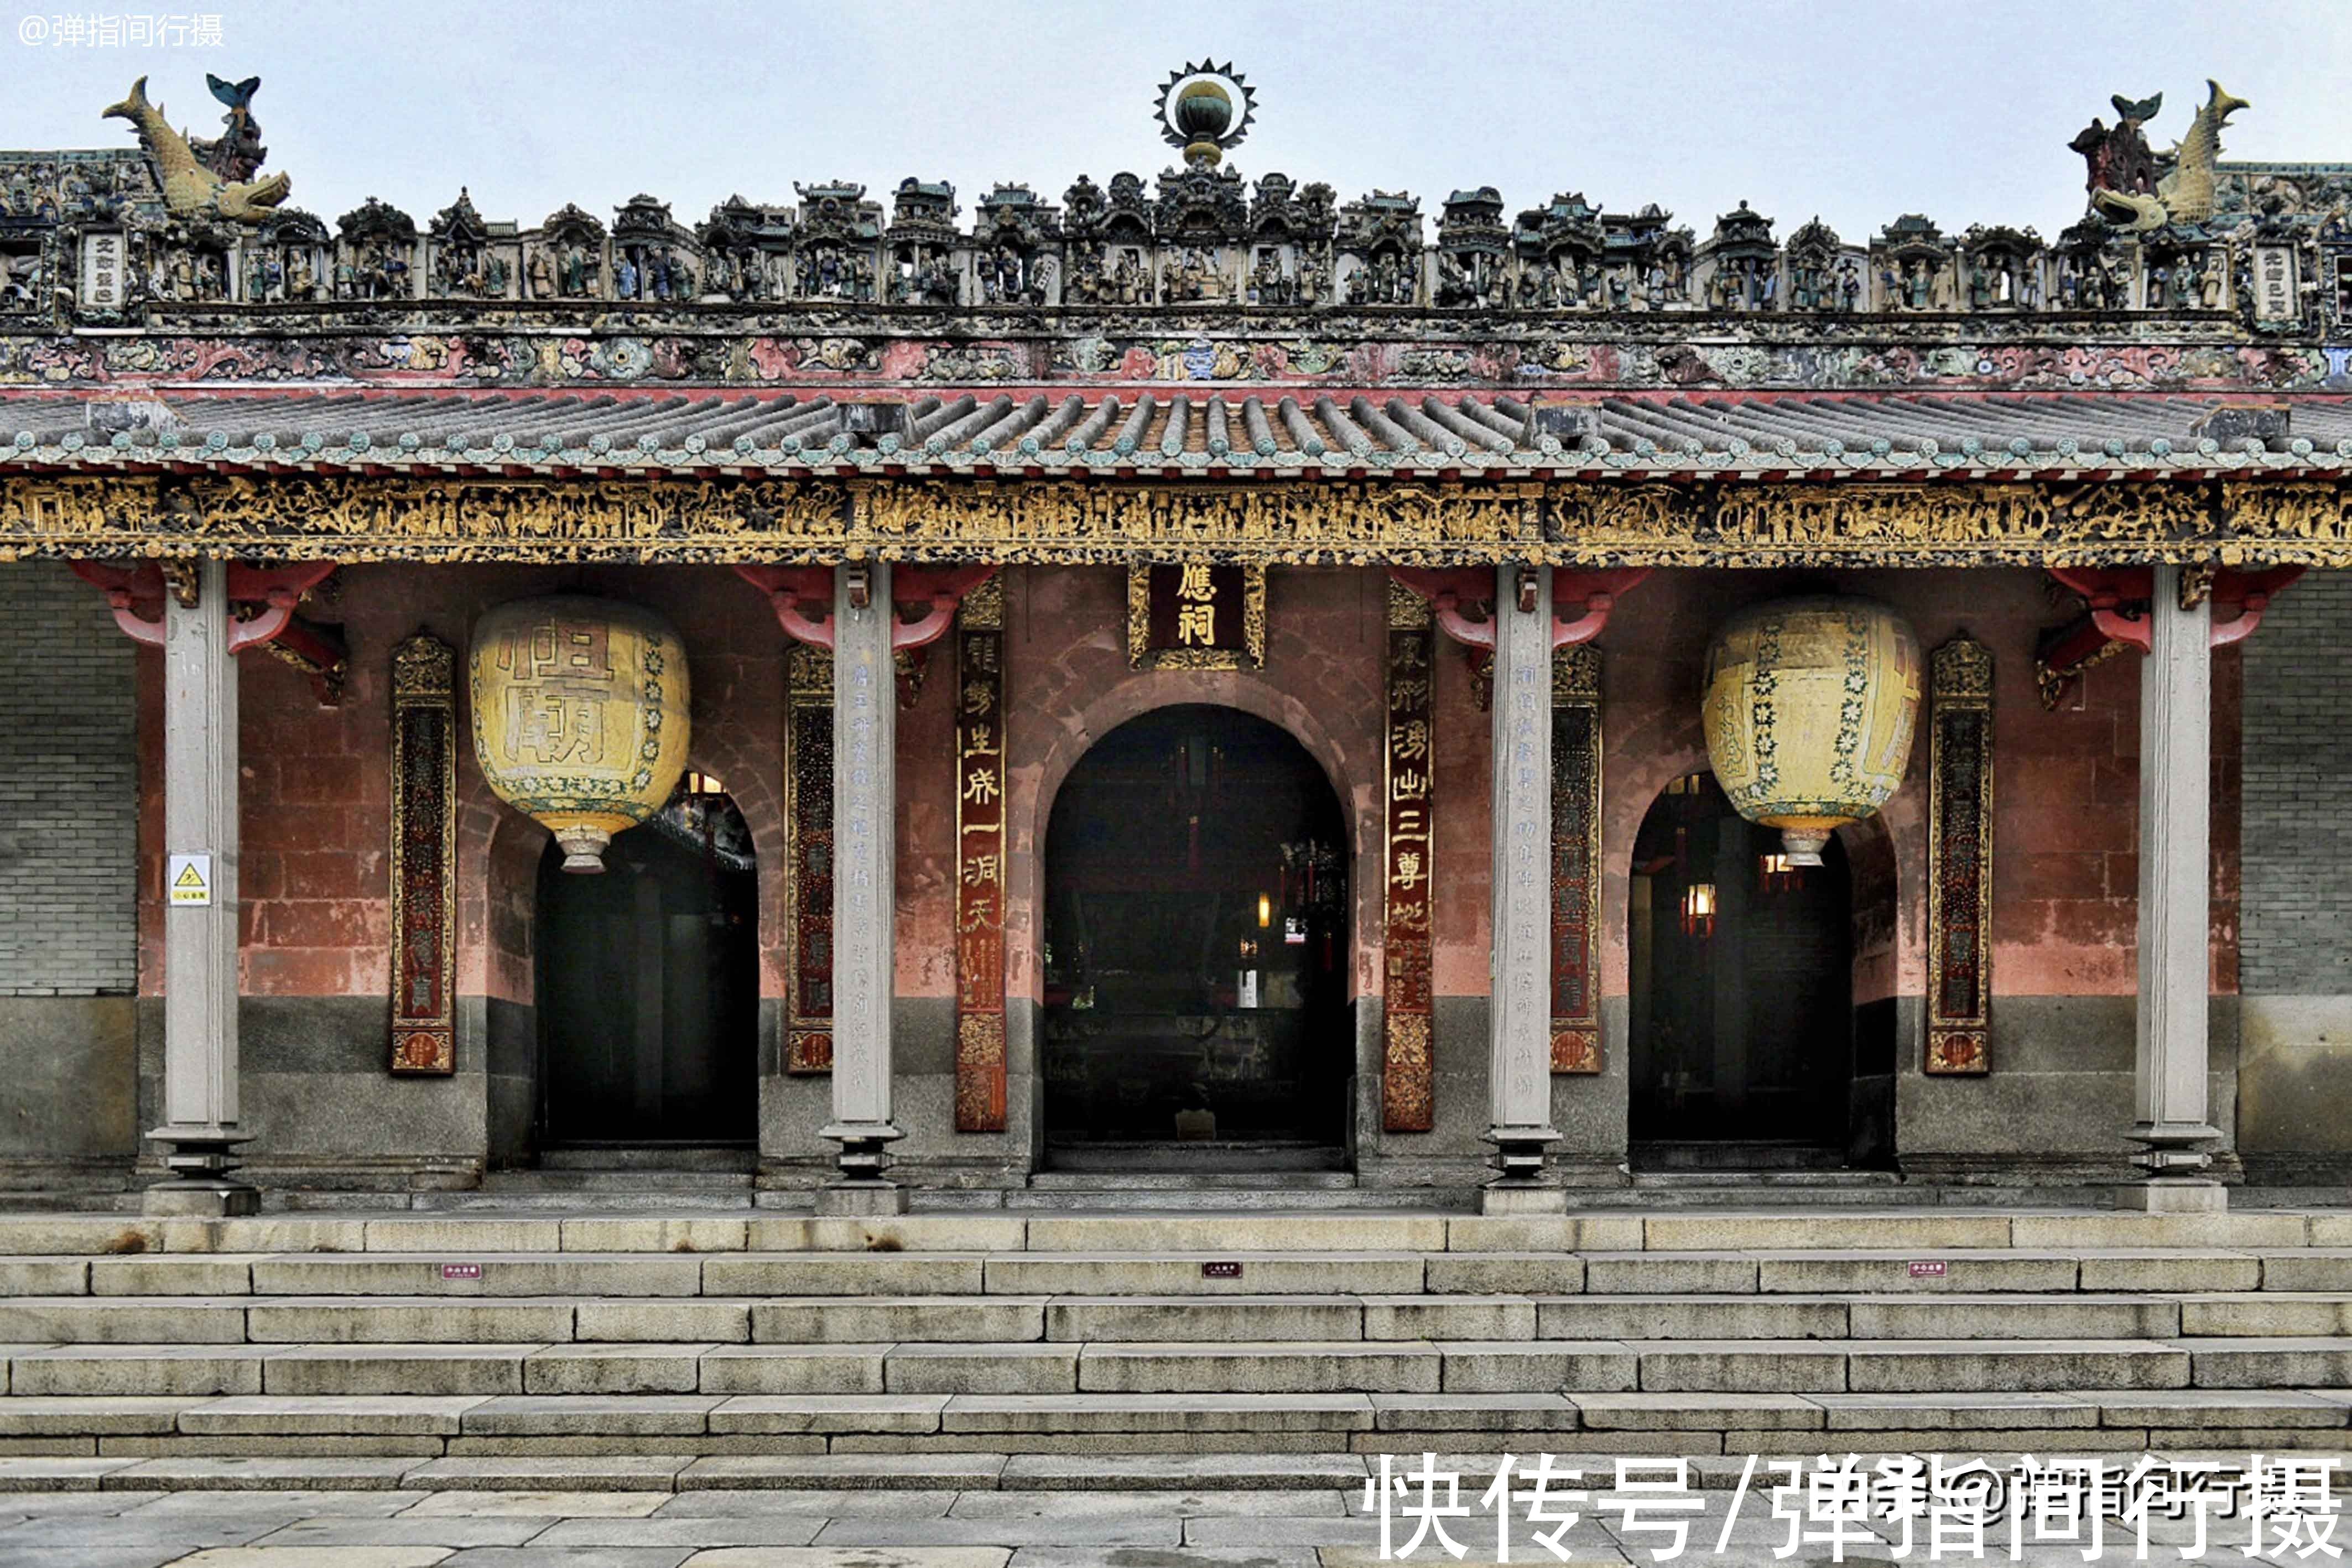 千年古庙|佛山有座千年古庙，汇聚岭南建筑文化精髓，获称“东方艺术宫殿”